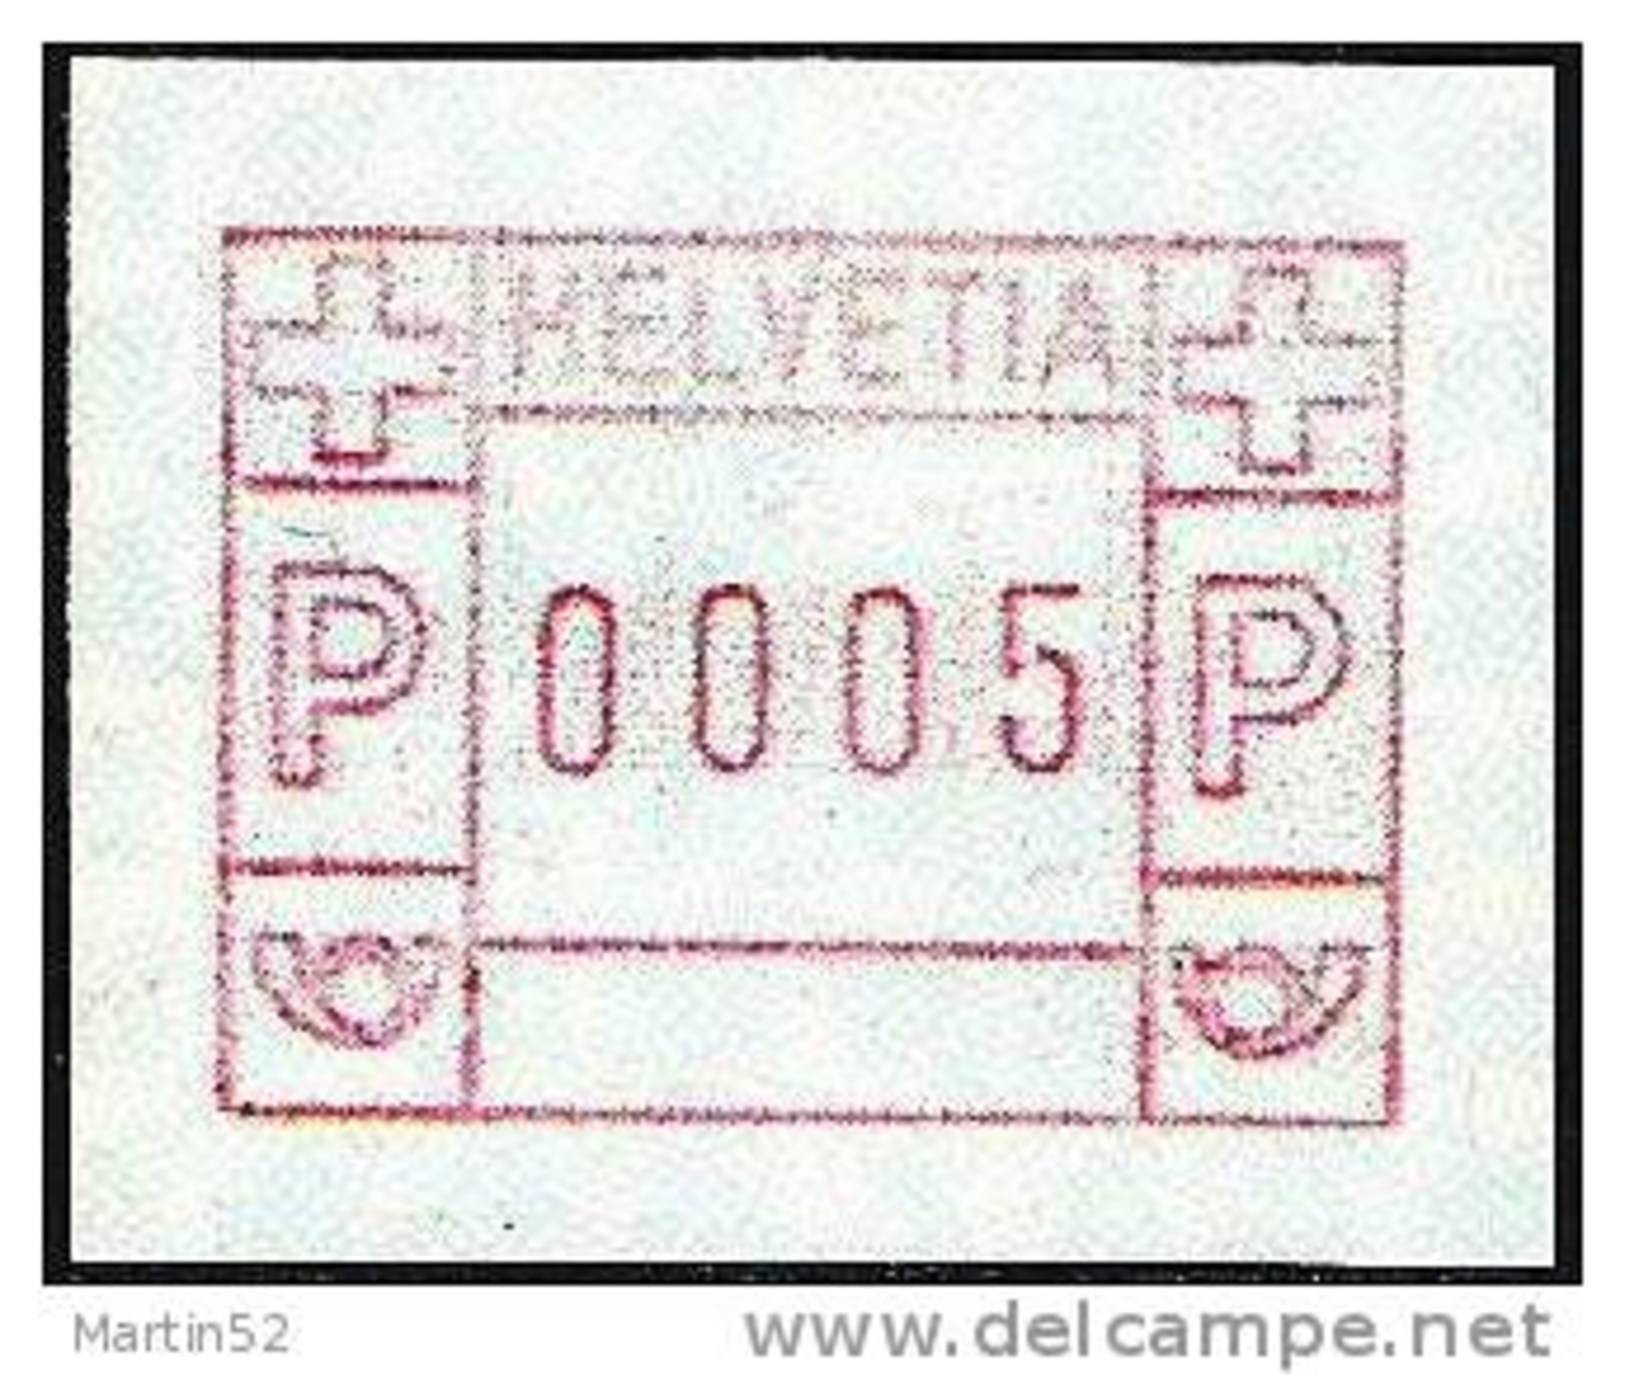 Schweiz Suisse 1981: FRAMA-ATM Timbre Automatique Label Of Vending Machine Zumstein 5 Michel 3.1b ** (SBK = CHF 3.50) - Postage Meters